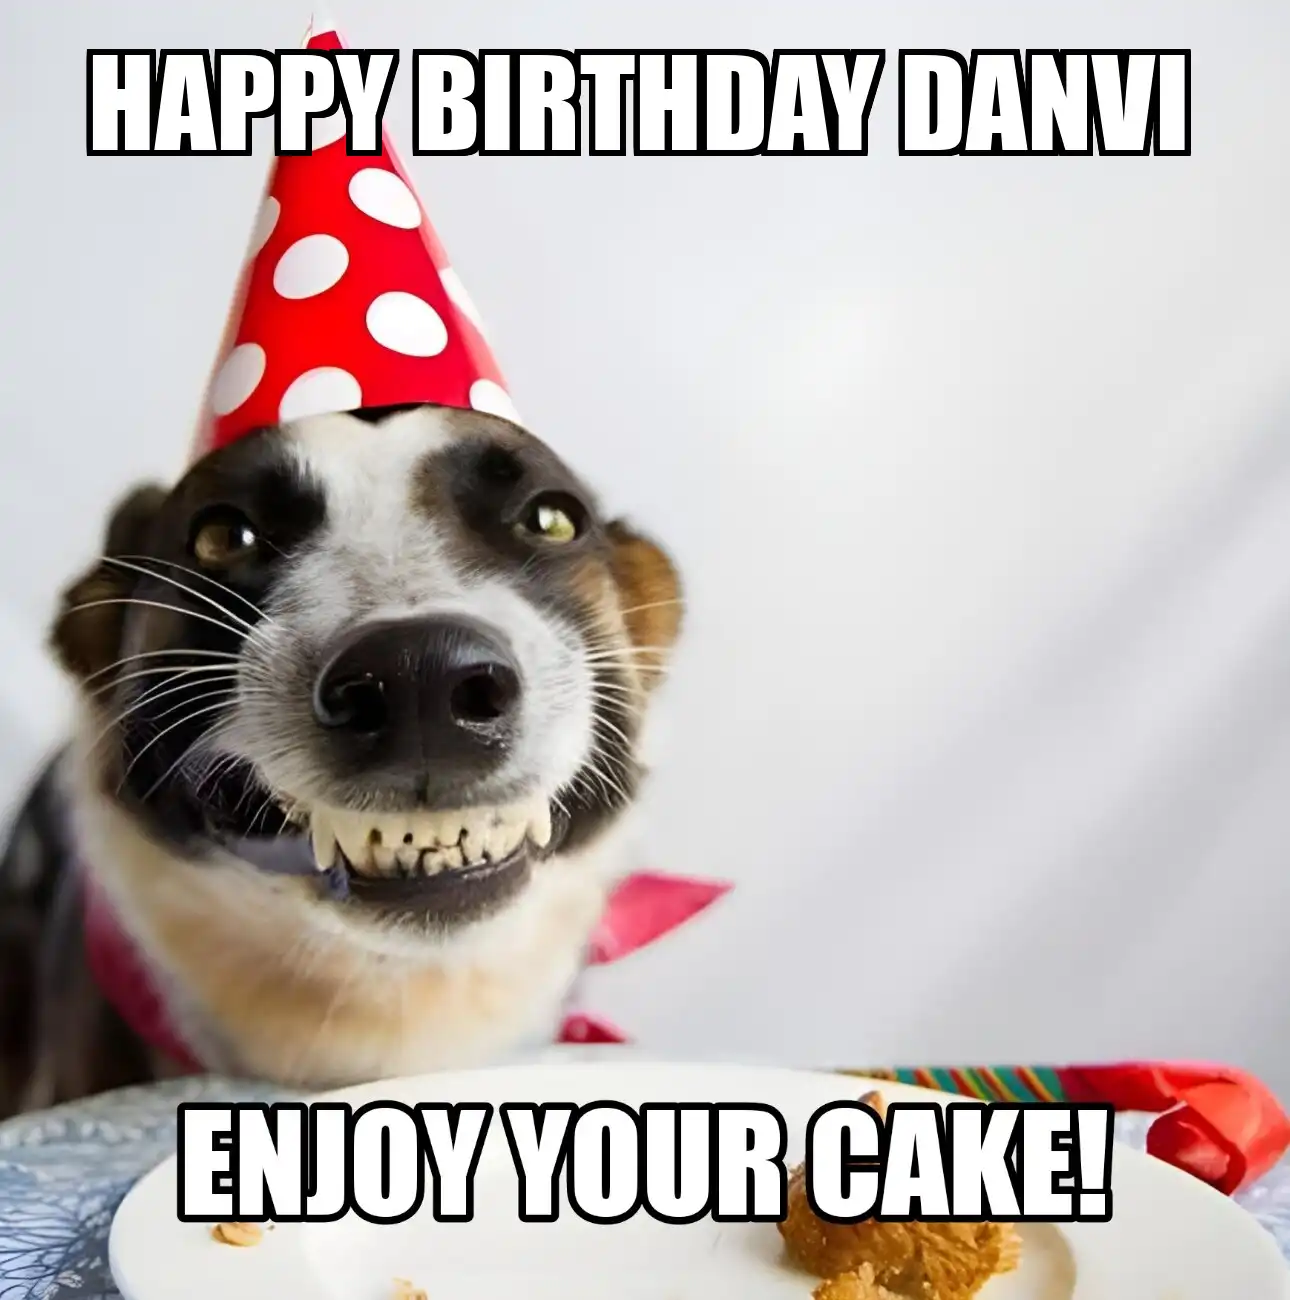 Happy Birthday Danvi Enjoy Your Cake Dog Meme